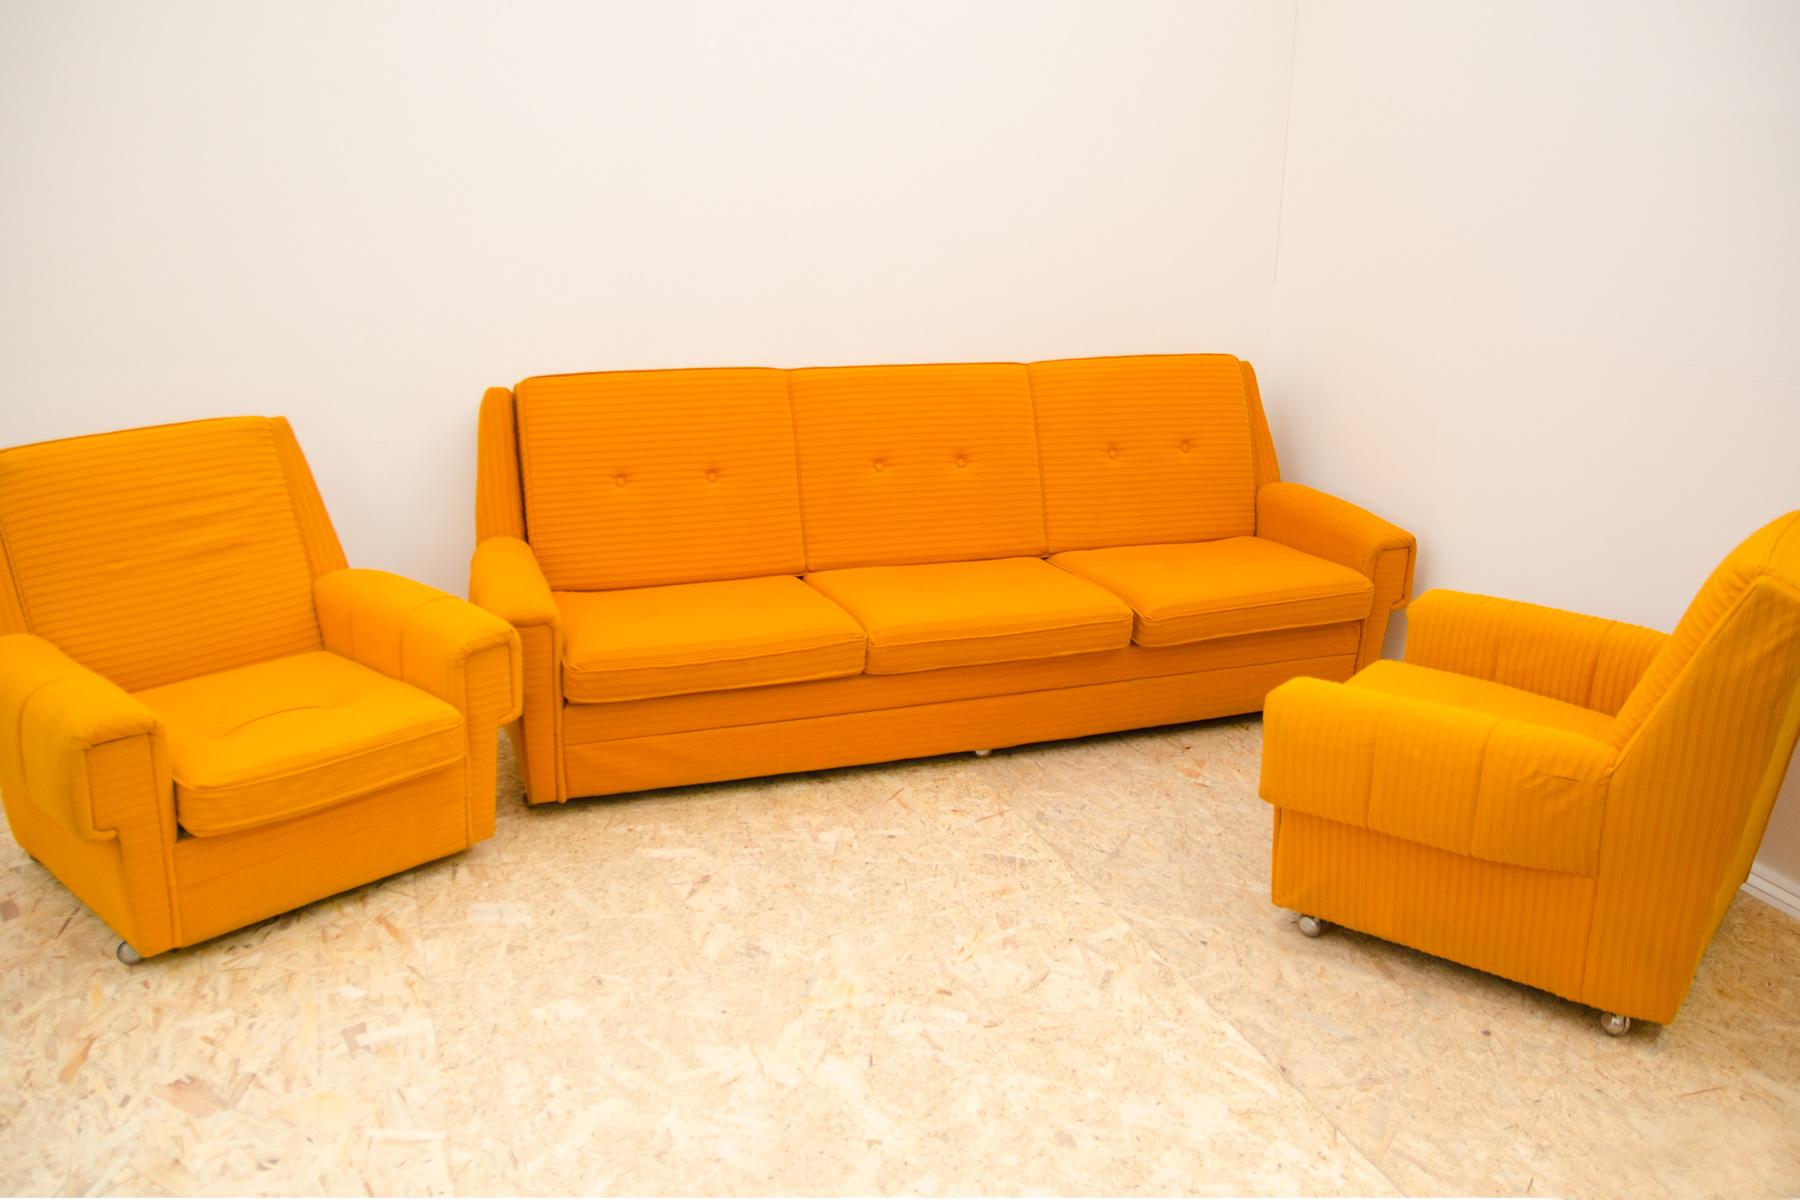 Cet ensemble de salon vintage est un exemple typique du design des meubles européens des années 1970/1980.

Le mobilier est très confortable.
Il se compose d'un canapé et de deux fauteuils sur roulettes. L'ensemble possède des tissus d'origine, tous